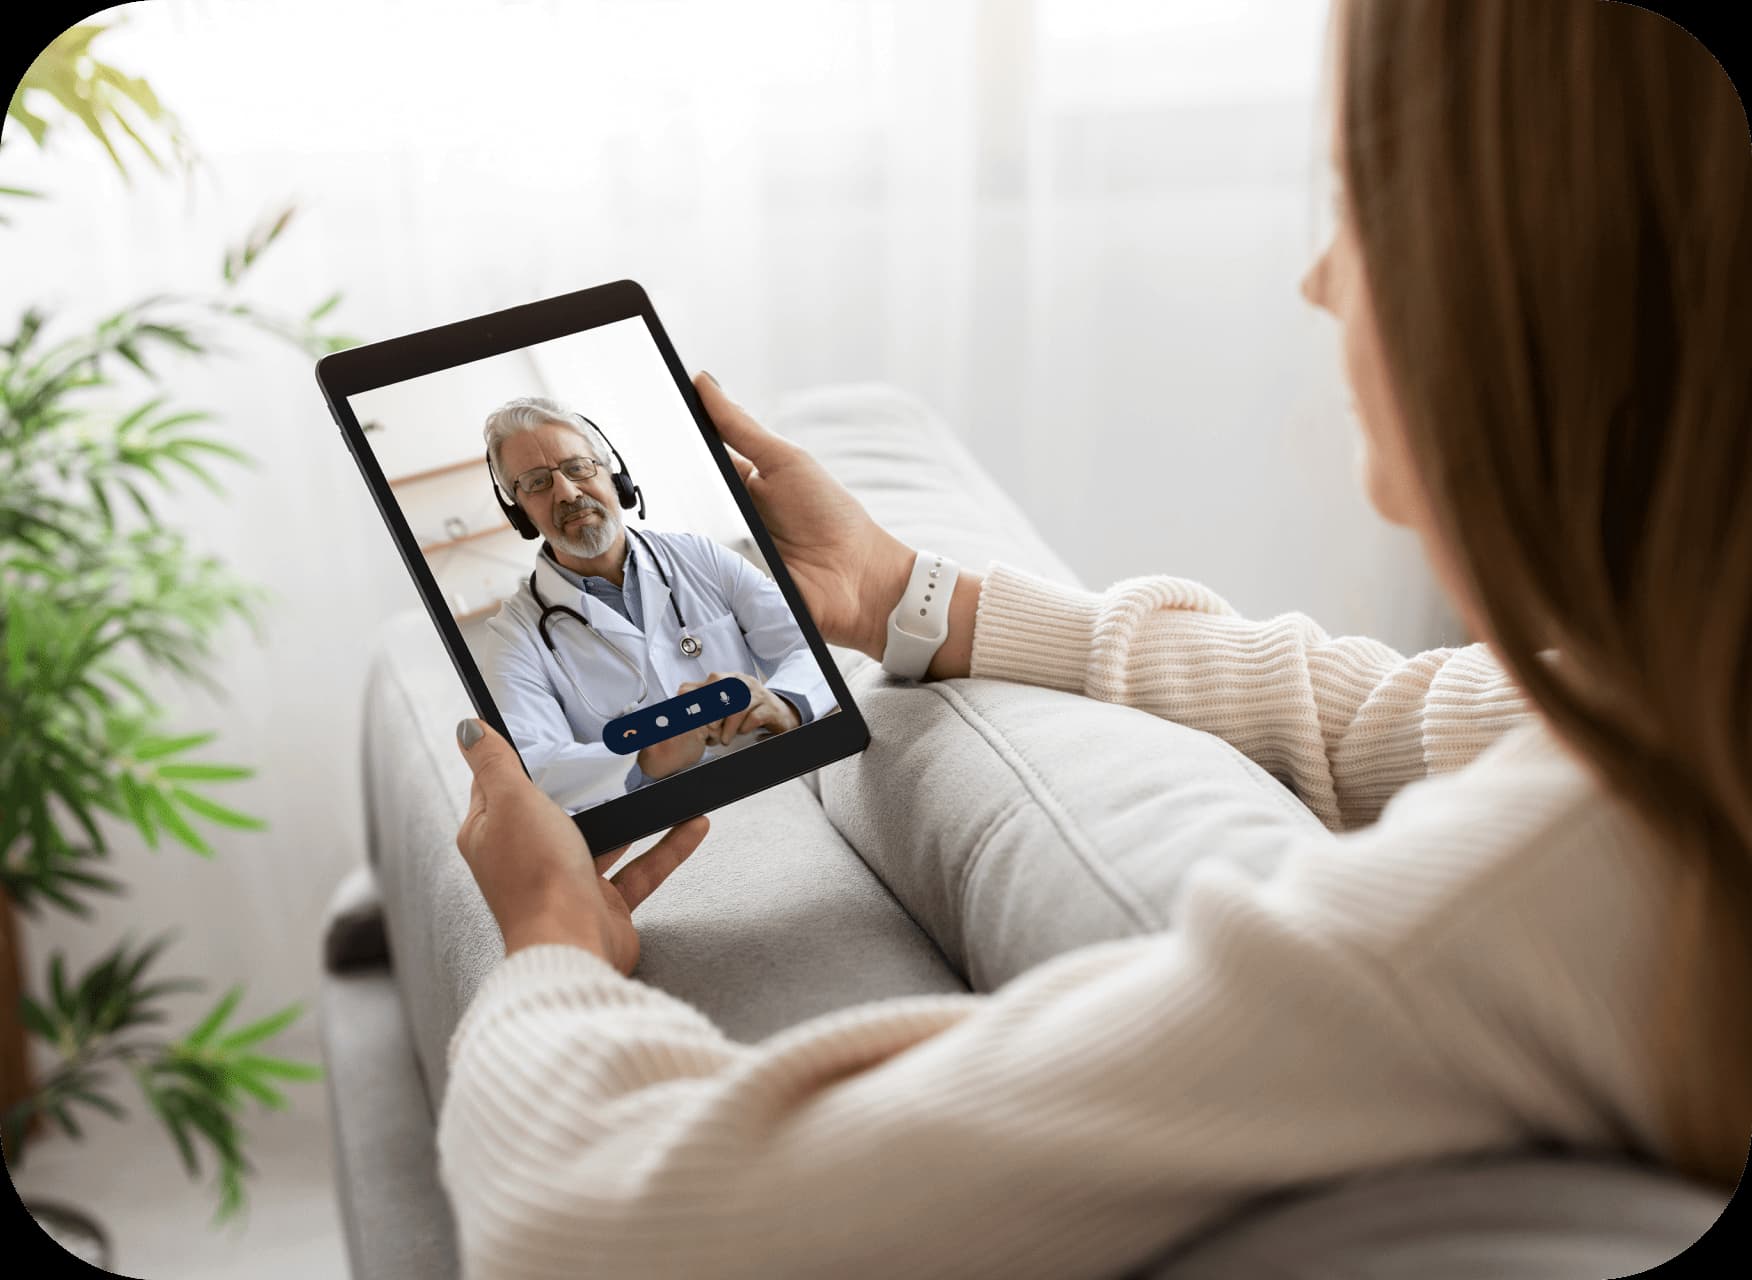 Patientin führt ein virtuelles Beratungsgespräch mit ihrem Arzt per Tablet.